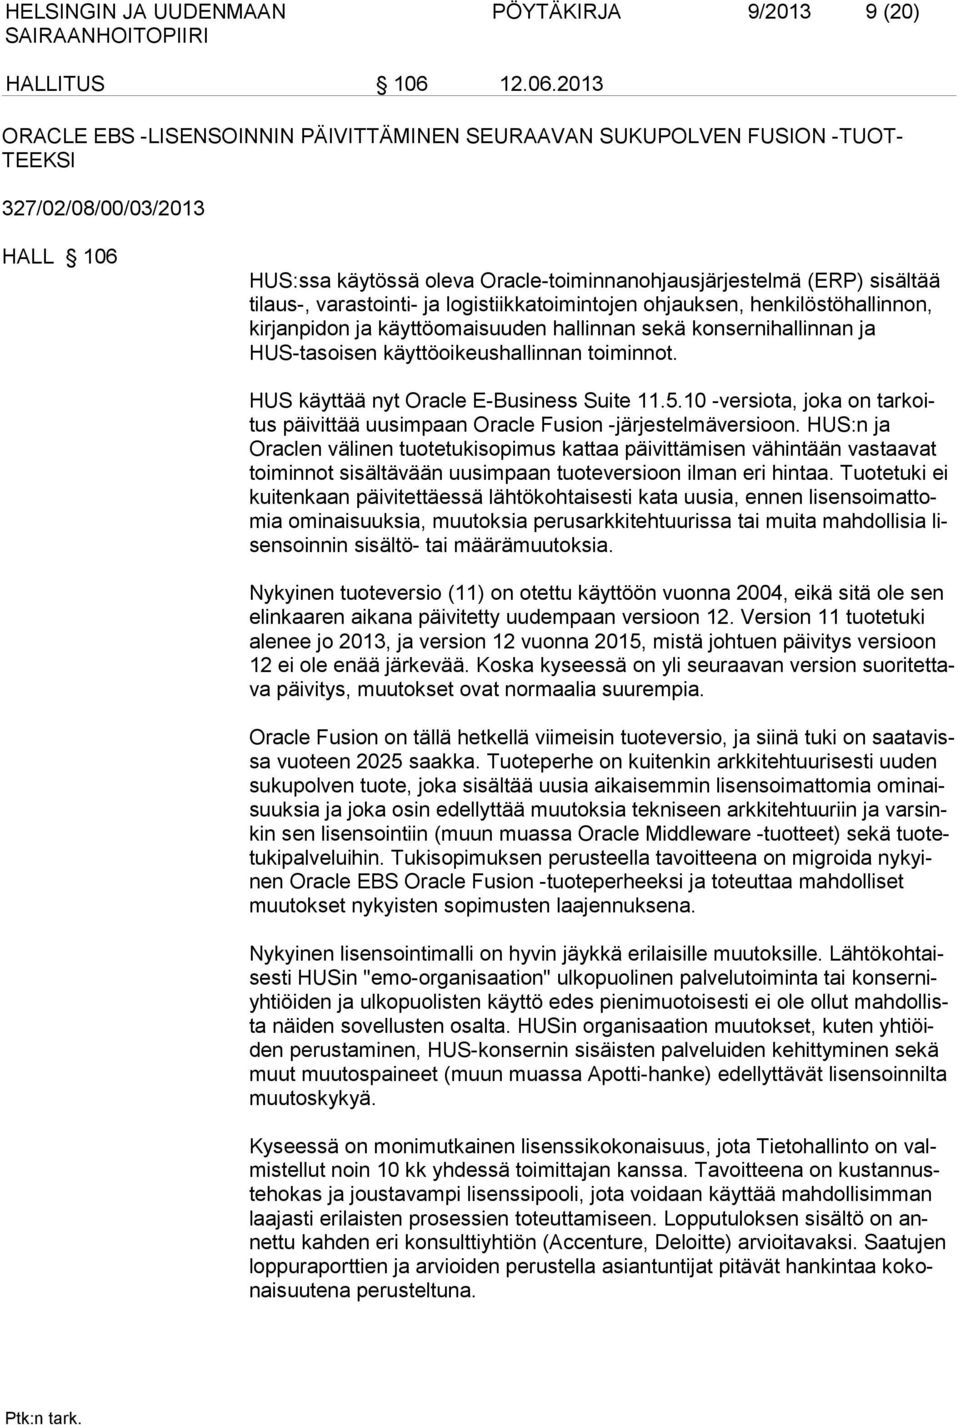 2013 ORACLE EBS -LISENSOINNIN PÄIVITTÄMINEN SEURAAVAN SUKUPOLVEN FUSION -TUOT- TEEKSI 327/02/08/00/03/2013 HALL 106 HUS:ssa käytössä oleva Oracle-toiminnanohjausjärjestelmä (ERP) sisältää tilaus-,